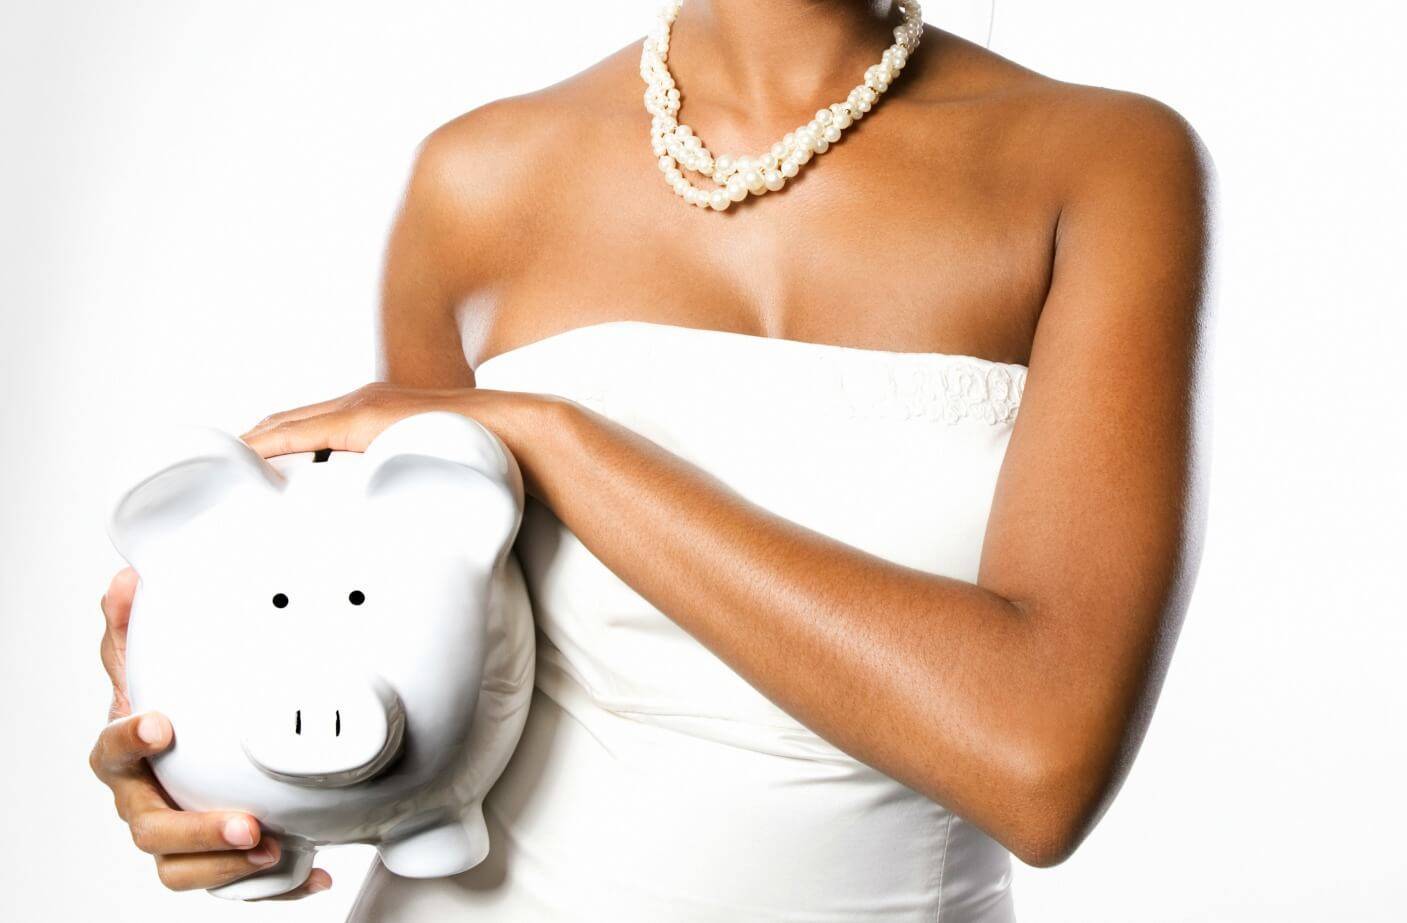 Как сэкономить на свадьбе: уменьшаем бюджет